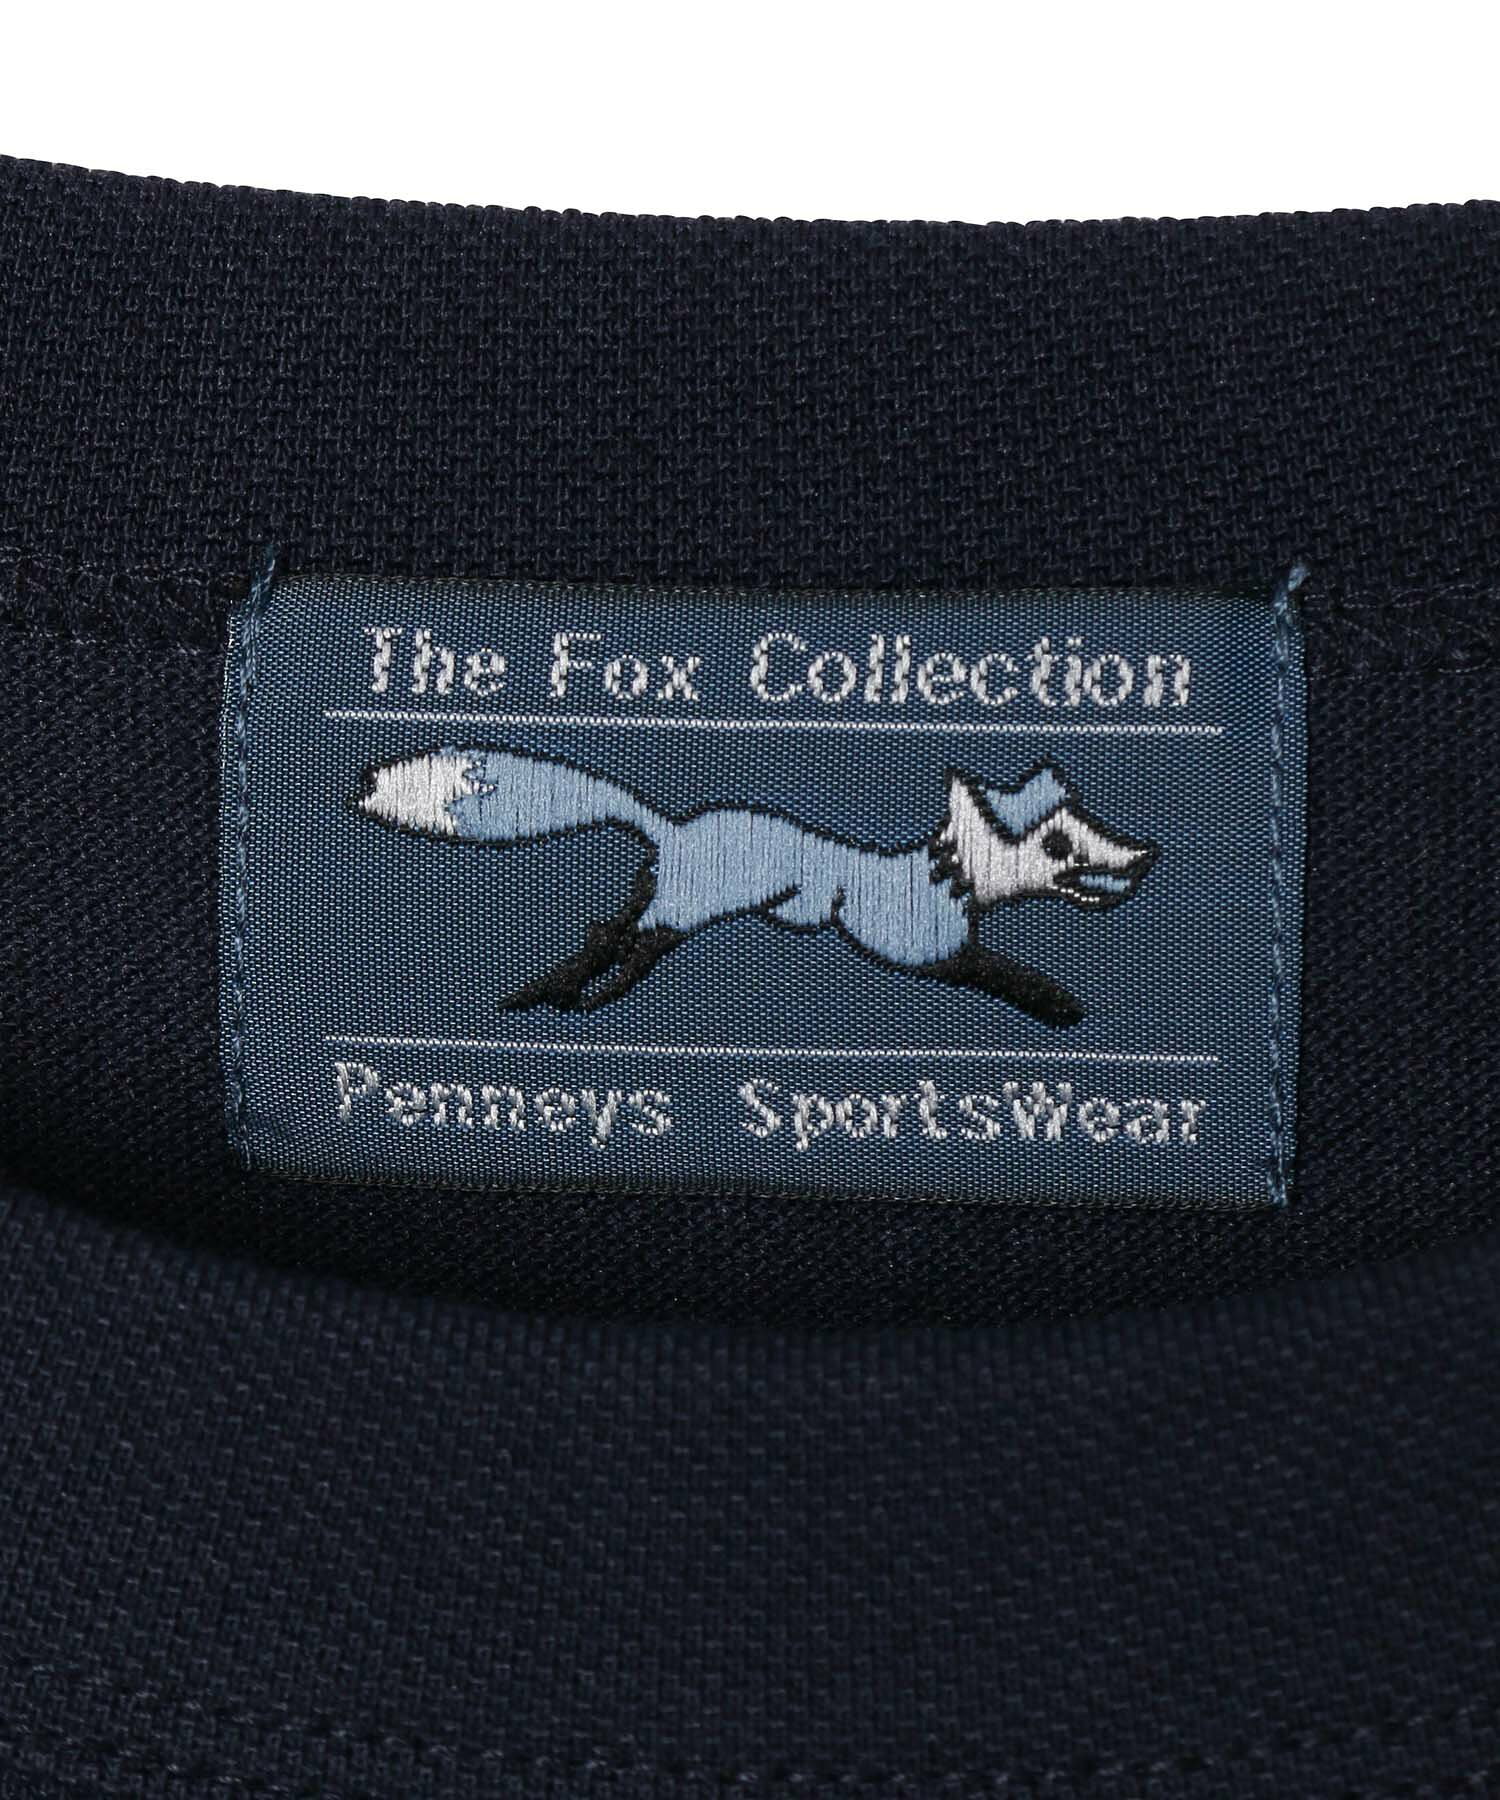 【 The Fox Collectionコラボ 】j.n.r.d / カノコTシャツ